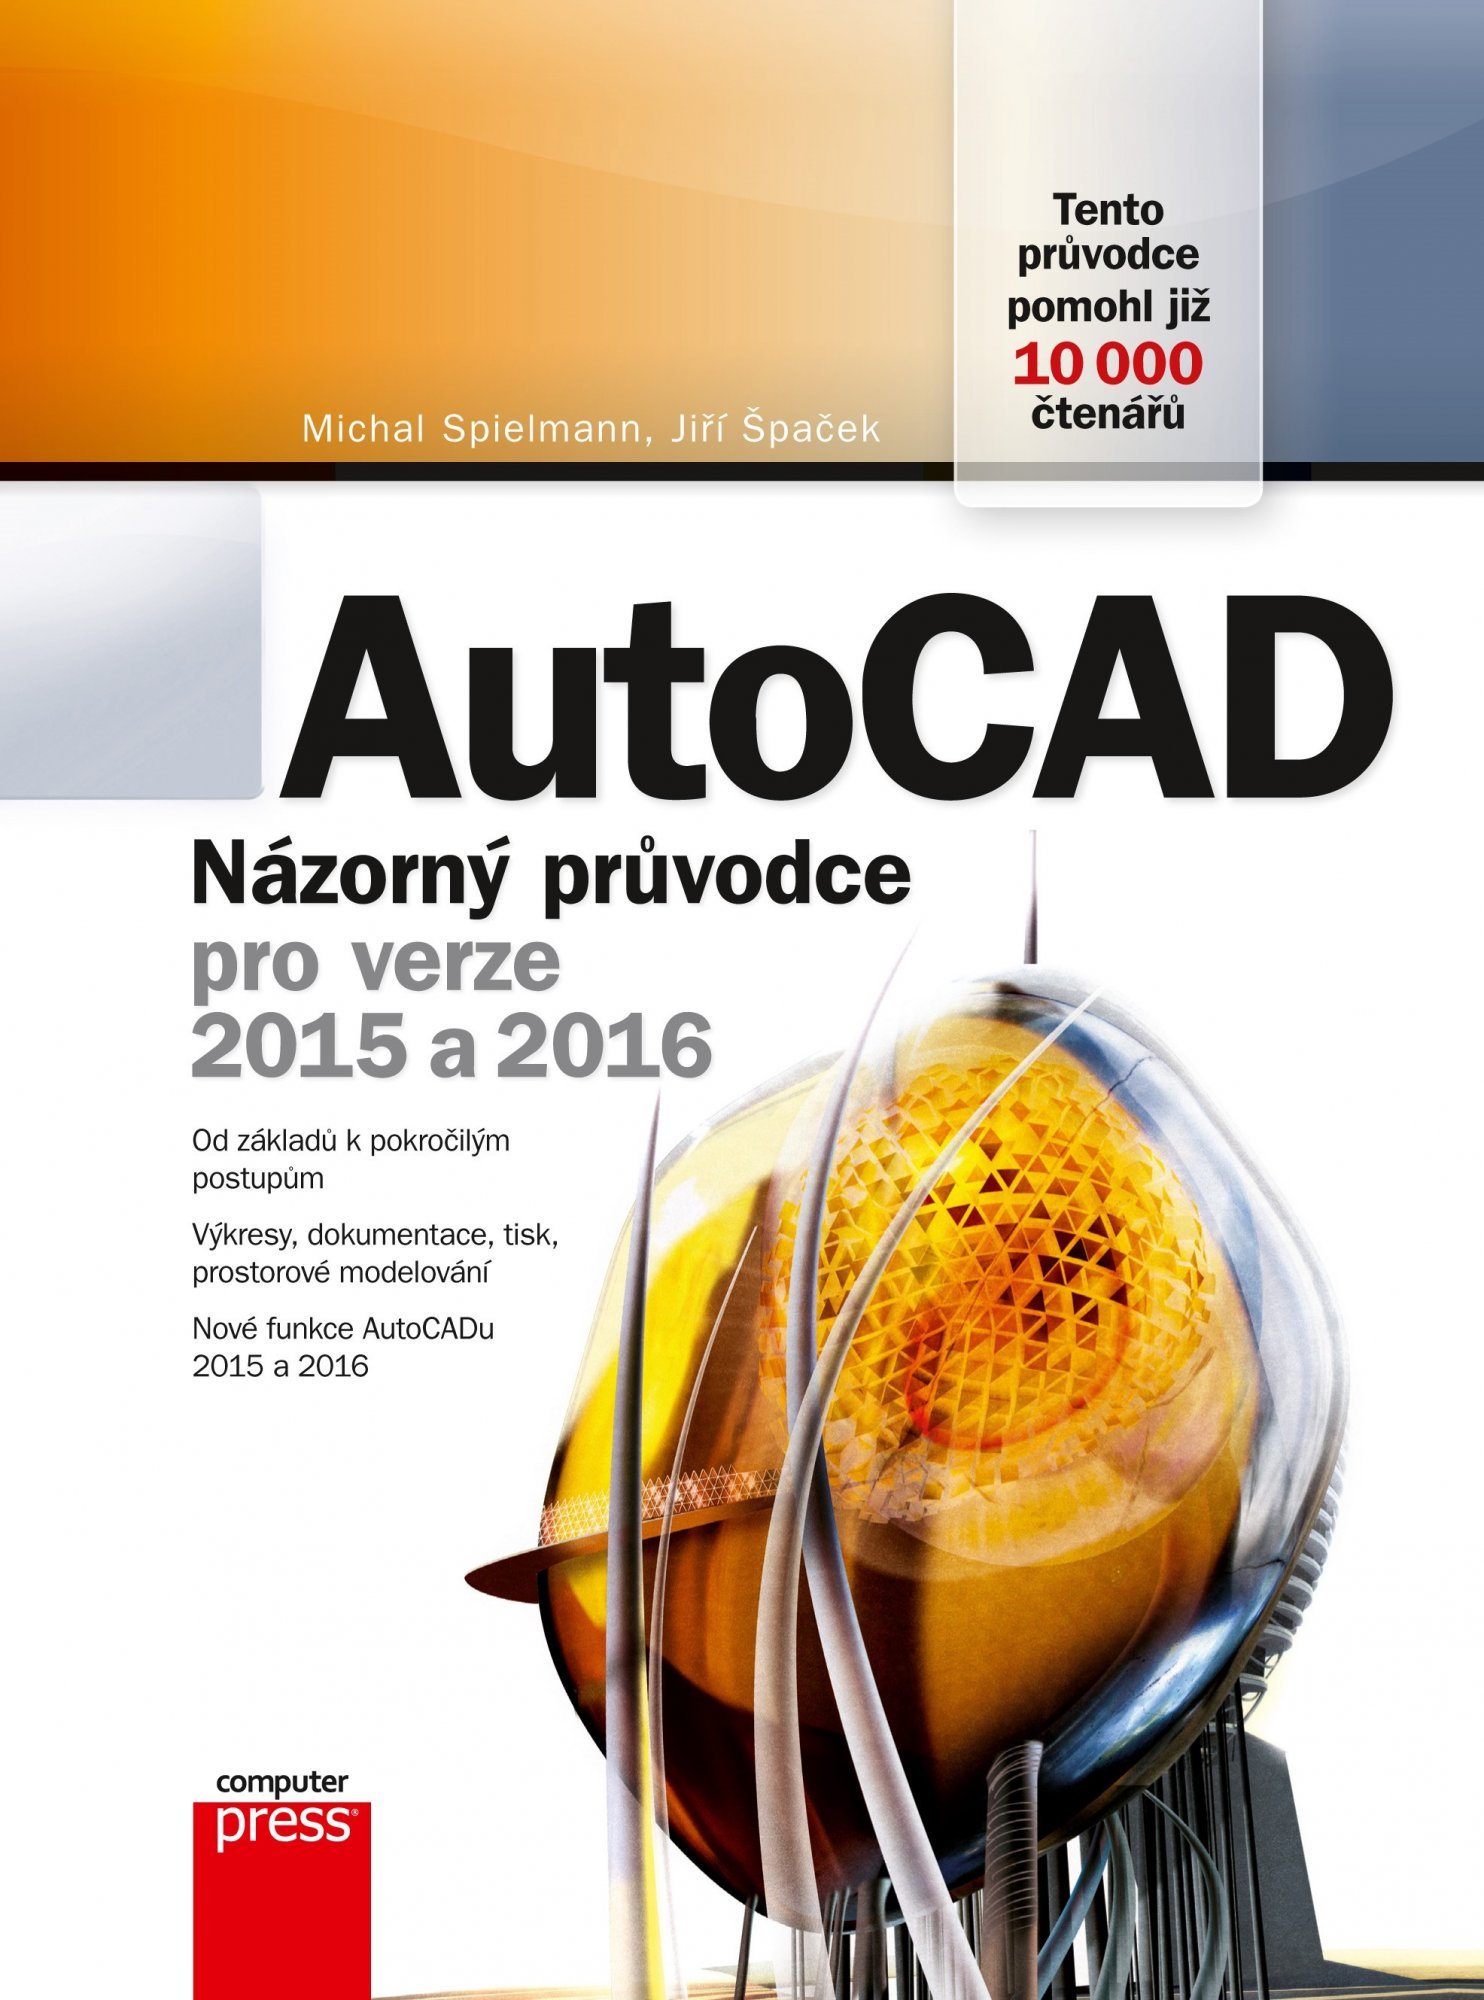 AutoCAD: Názorný průvodce pro verze 2015 a 2016 - Michal Spielmann